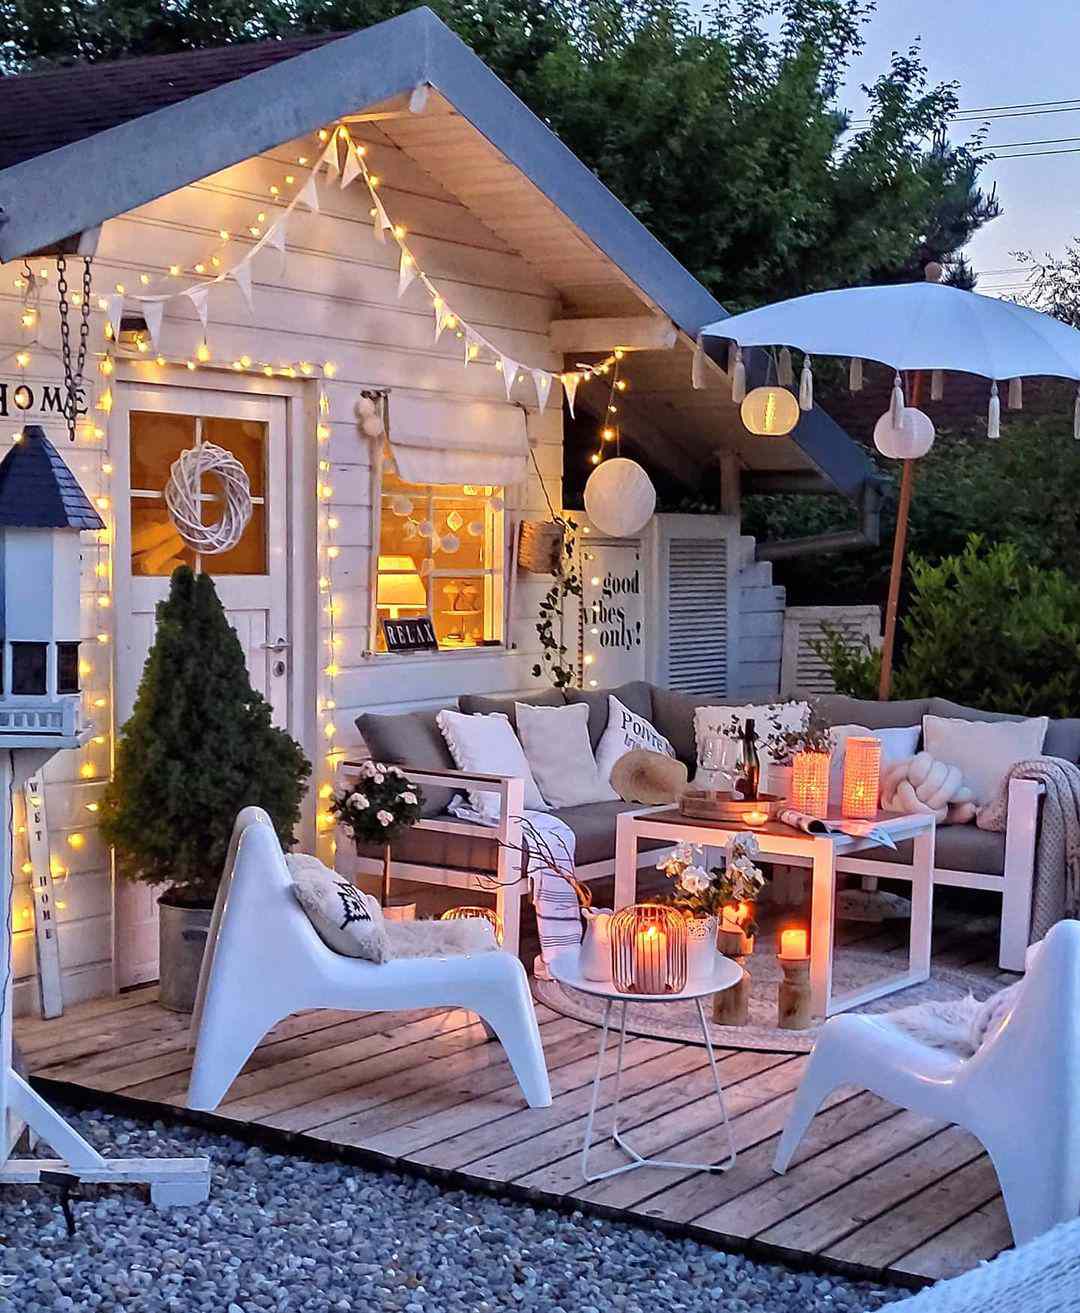 Casa de Verão do País das Maravilhas Brancas